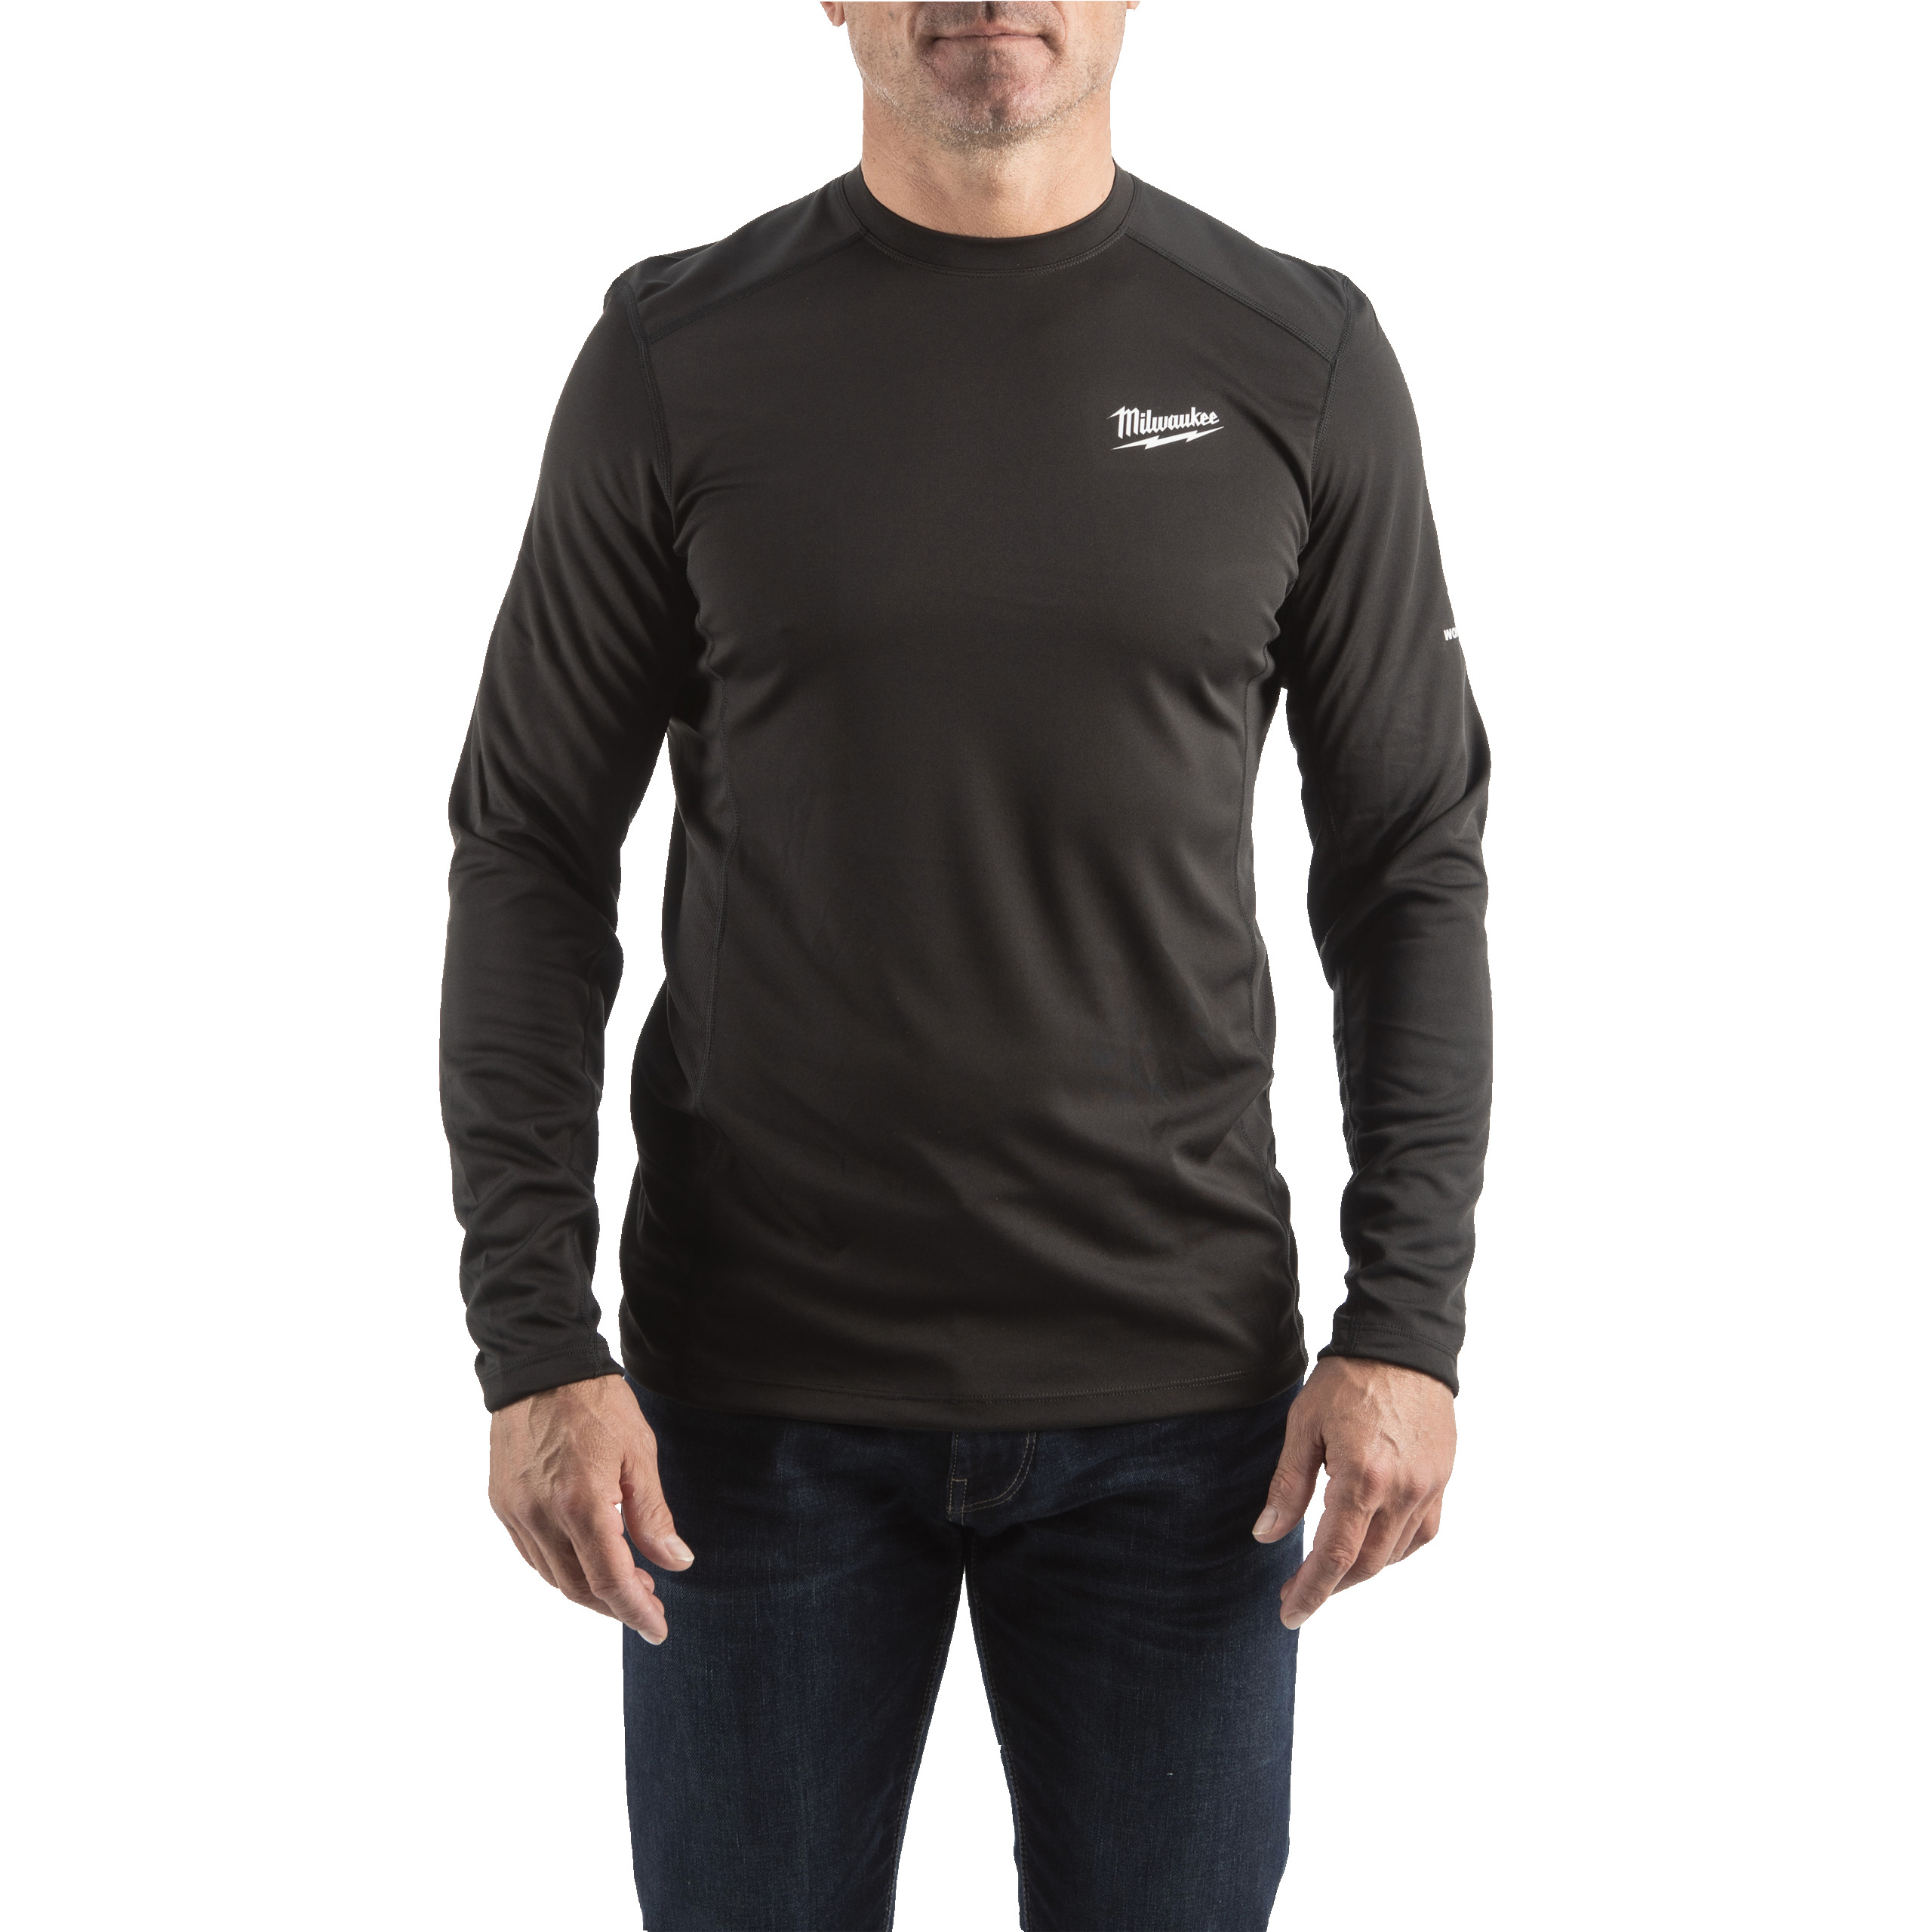 Funktions-Langarm-Shirt schwarz mit UV-Schutz (WWLSBL-M)